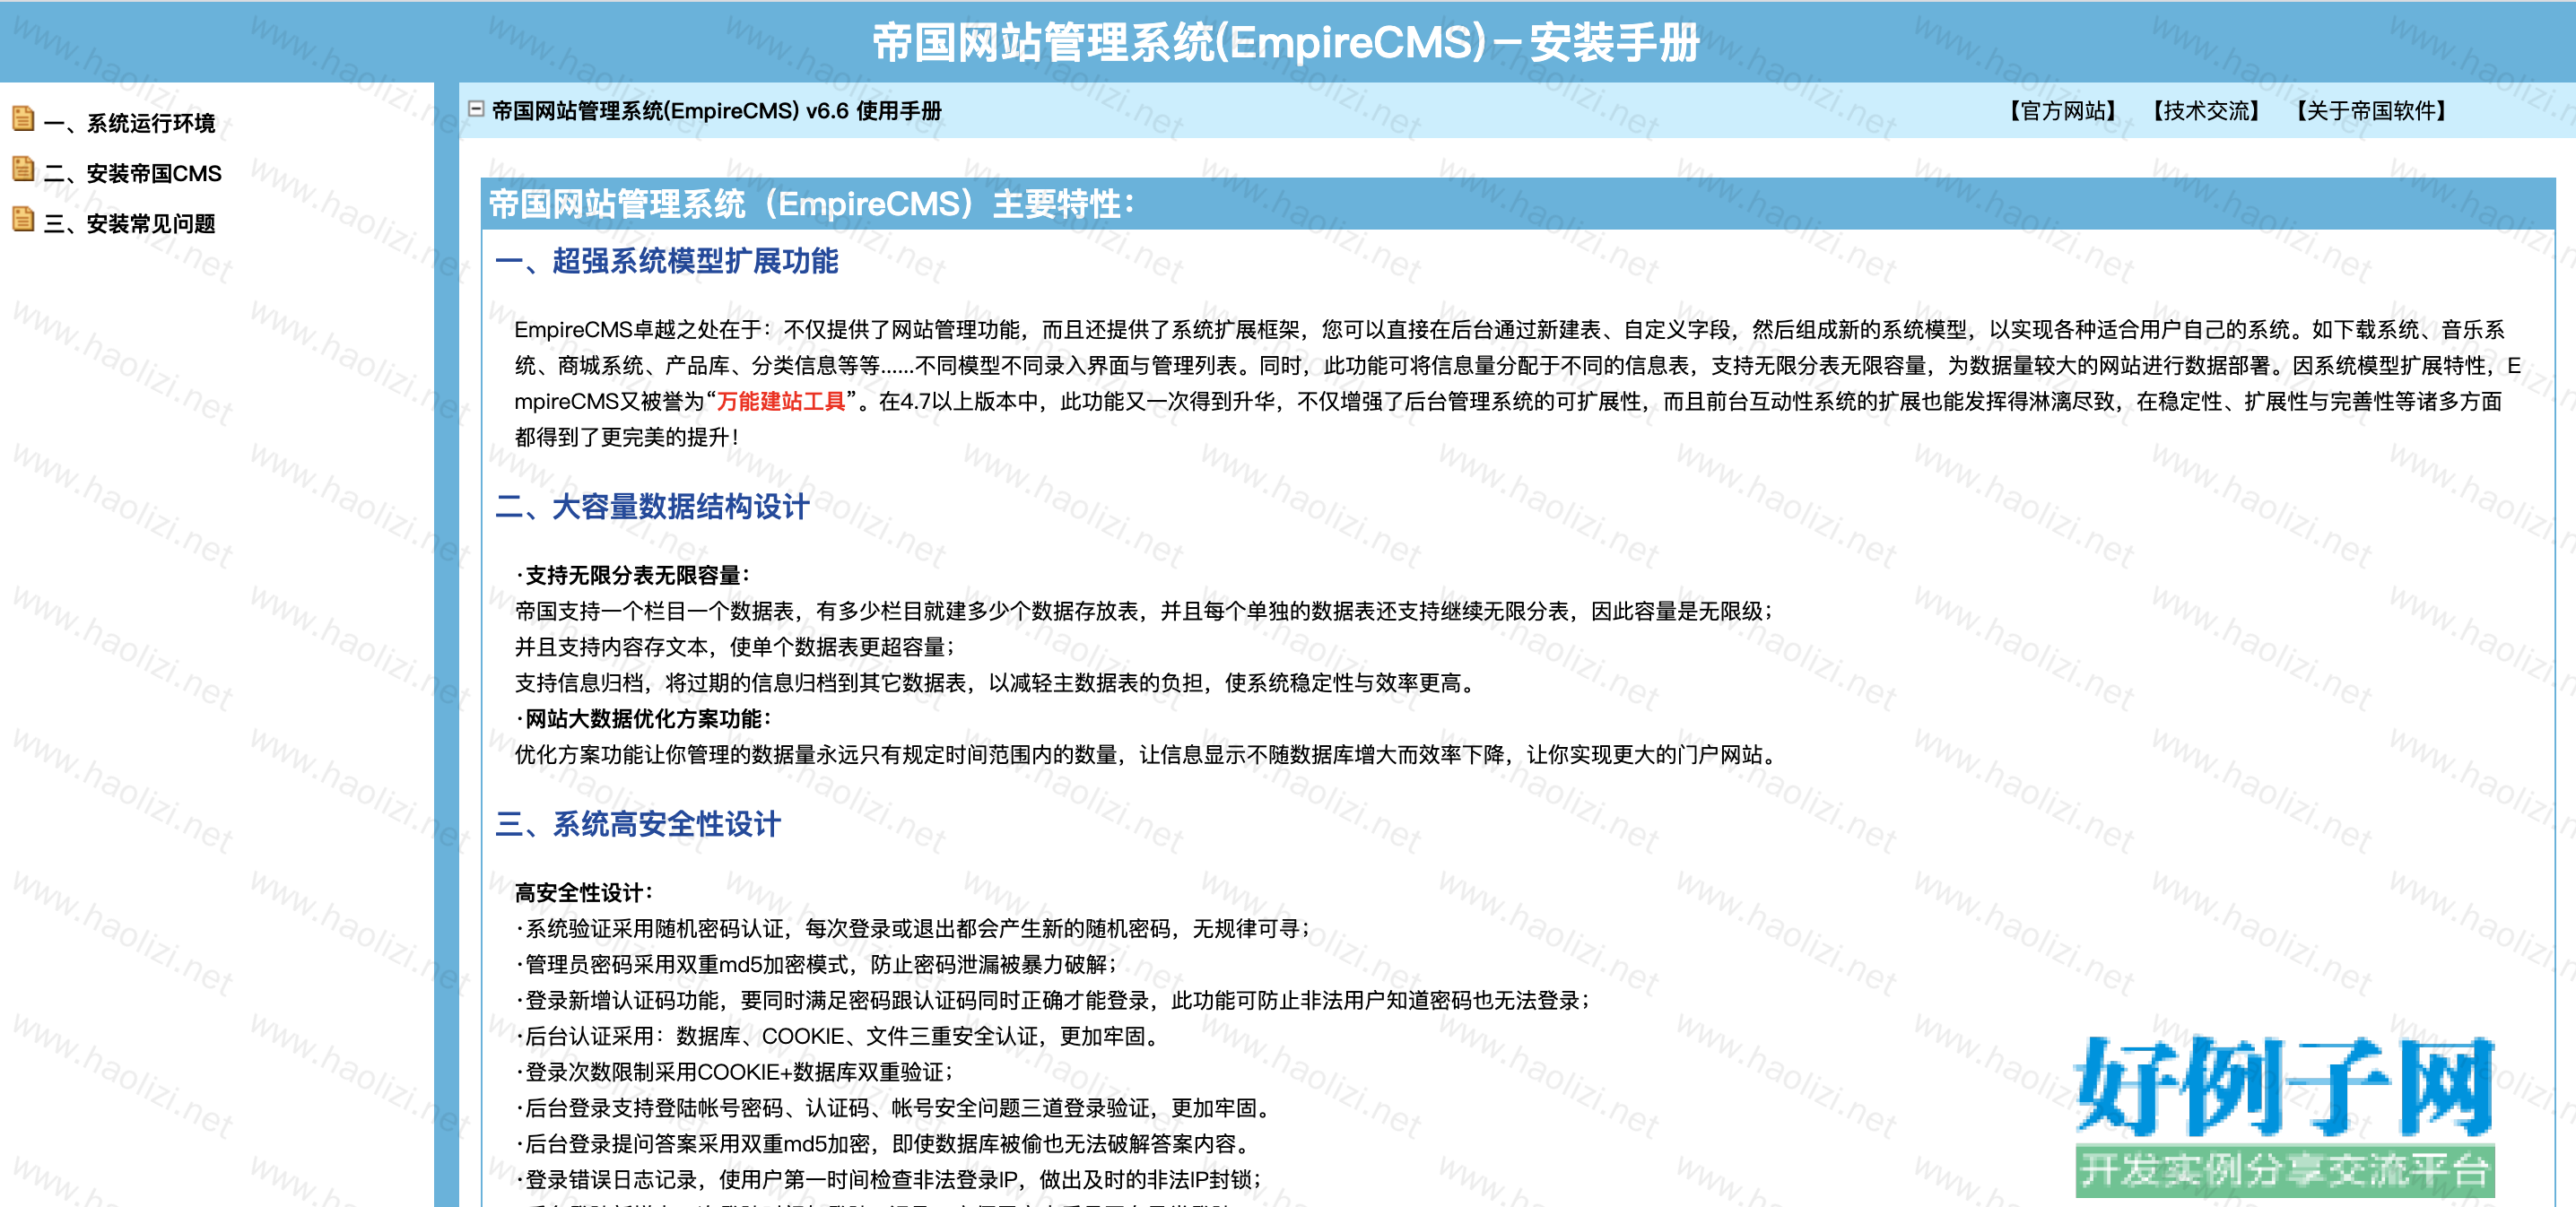 帝国cms使用手册 - 开发实例、源码下载 - 好例子网